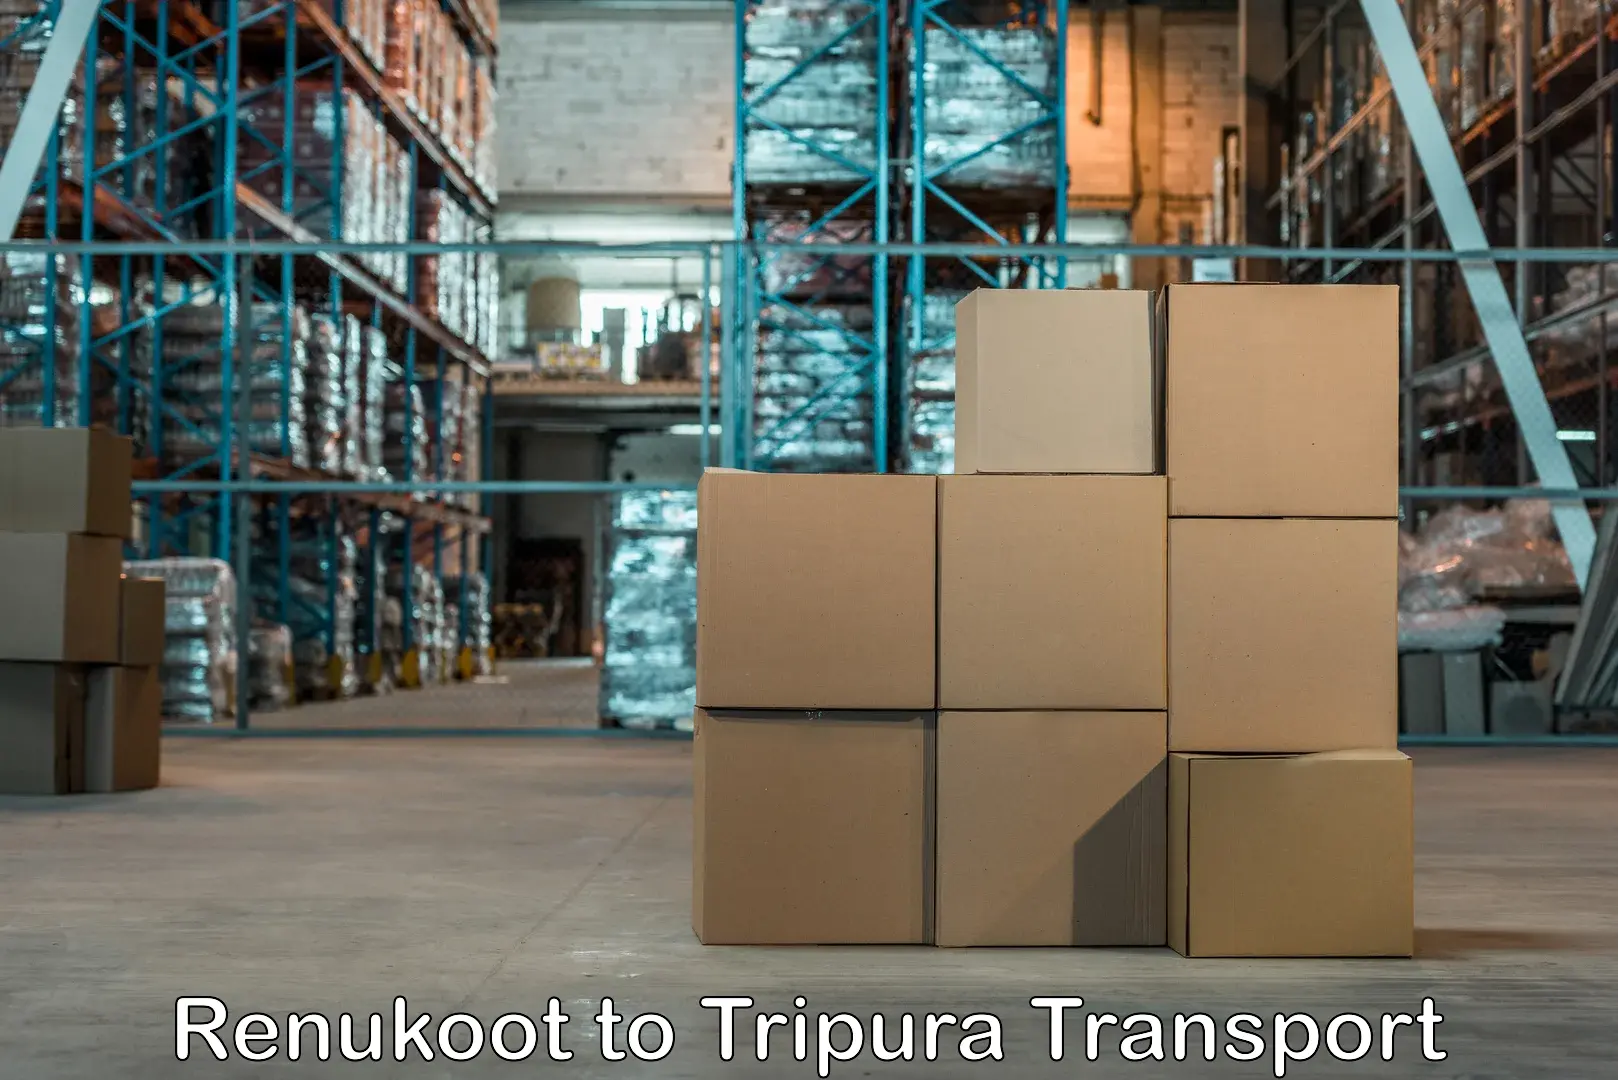 Nearest transport service Renukoot to Tripura